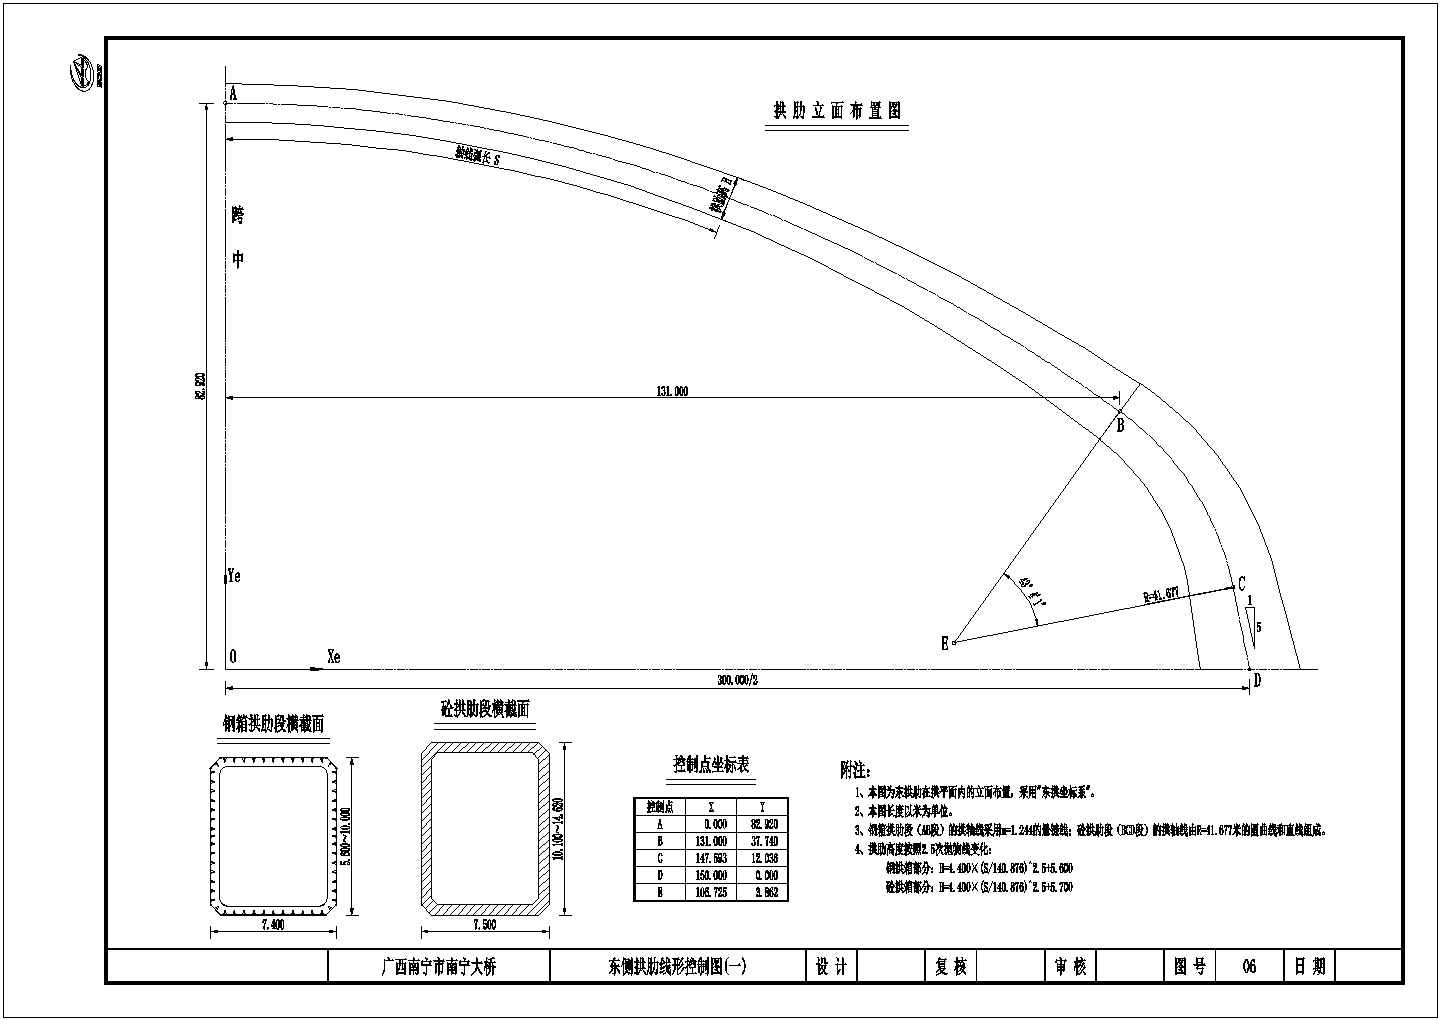 某300m蝴蝶拱桥大桥CAD施工图东侧拱肋线形控制图